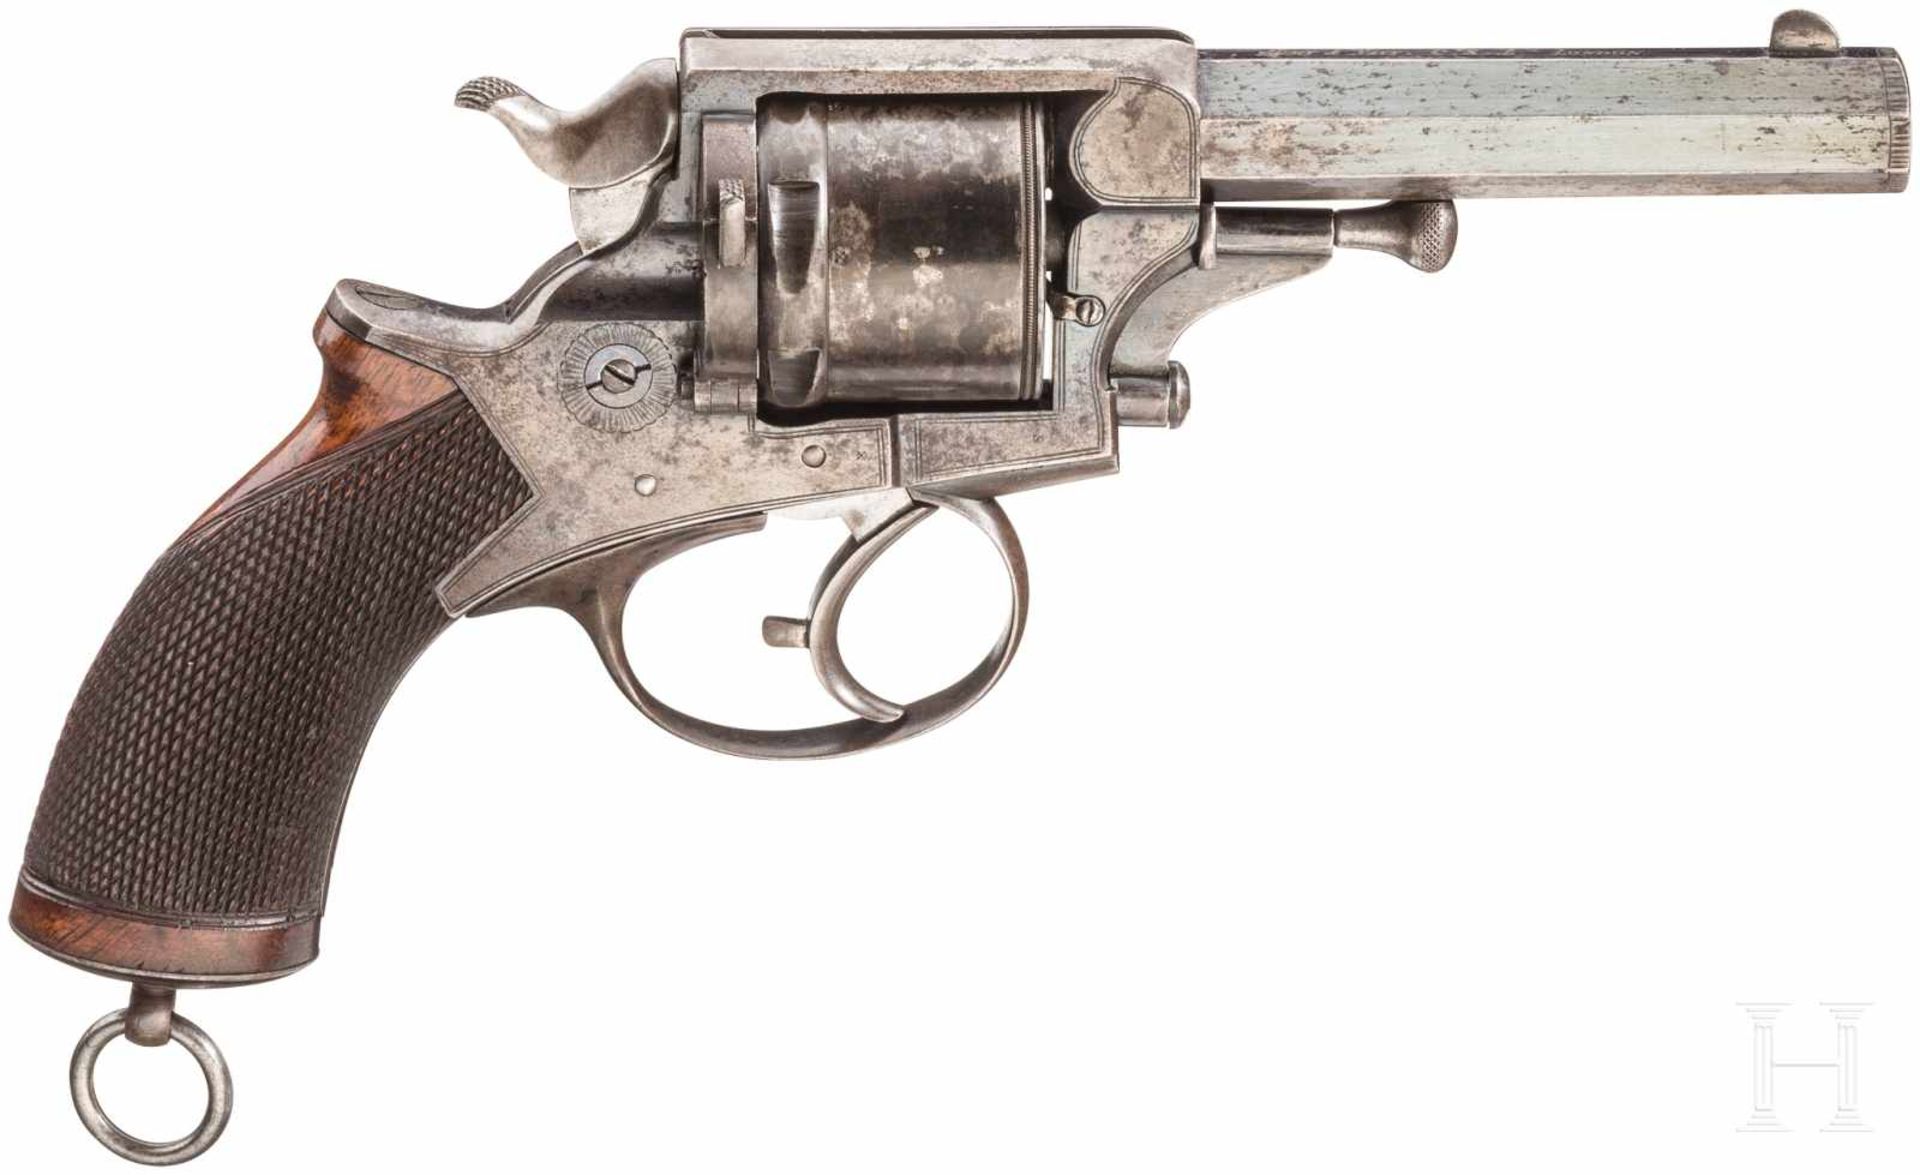 Revolver System Tranter im Kasten, London, nach 1871Kal. .450, Nr. 56647, Gezogener 4,5"- - Bild 2 aus 3